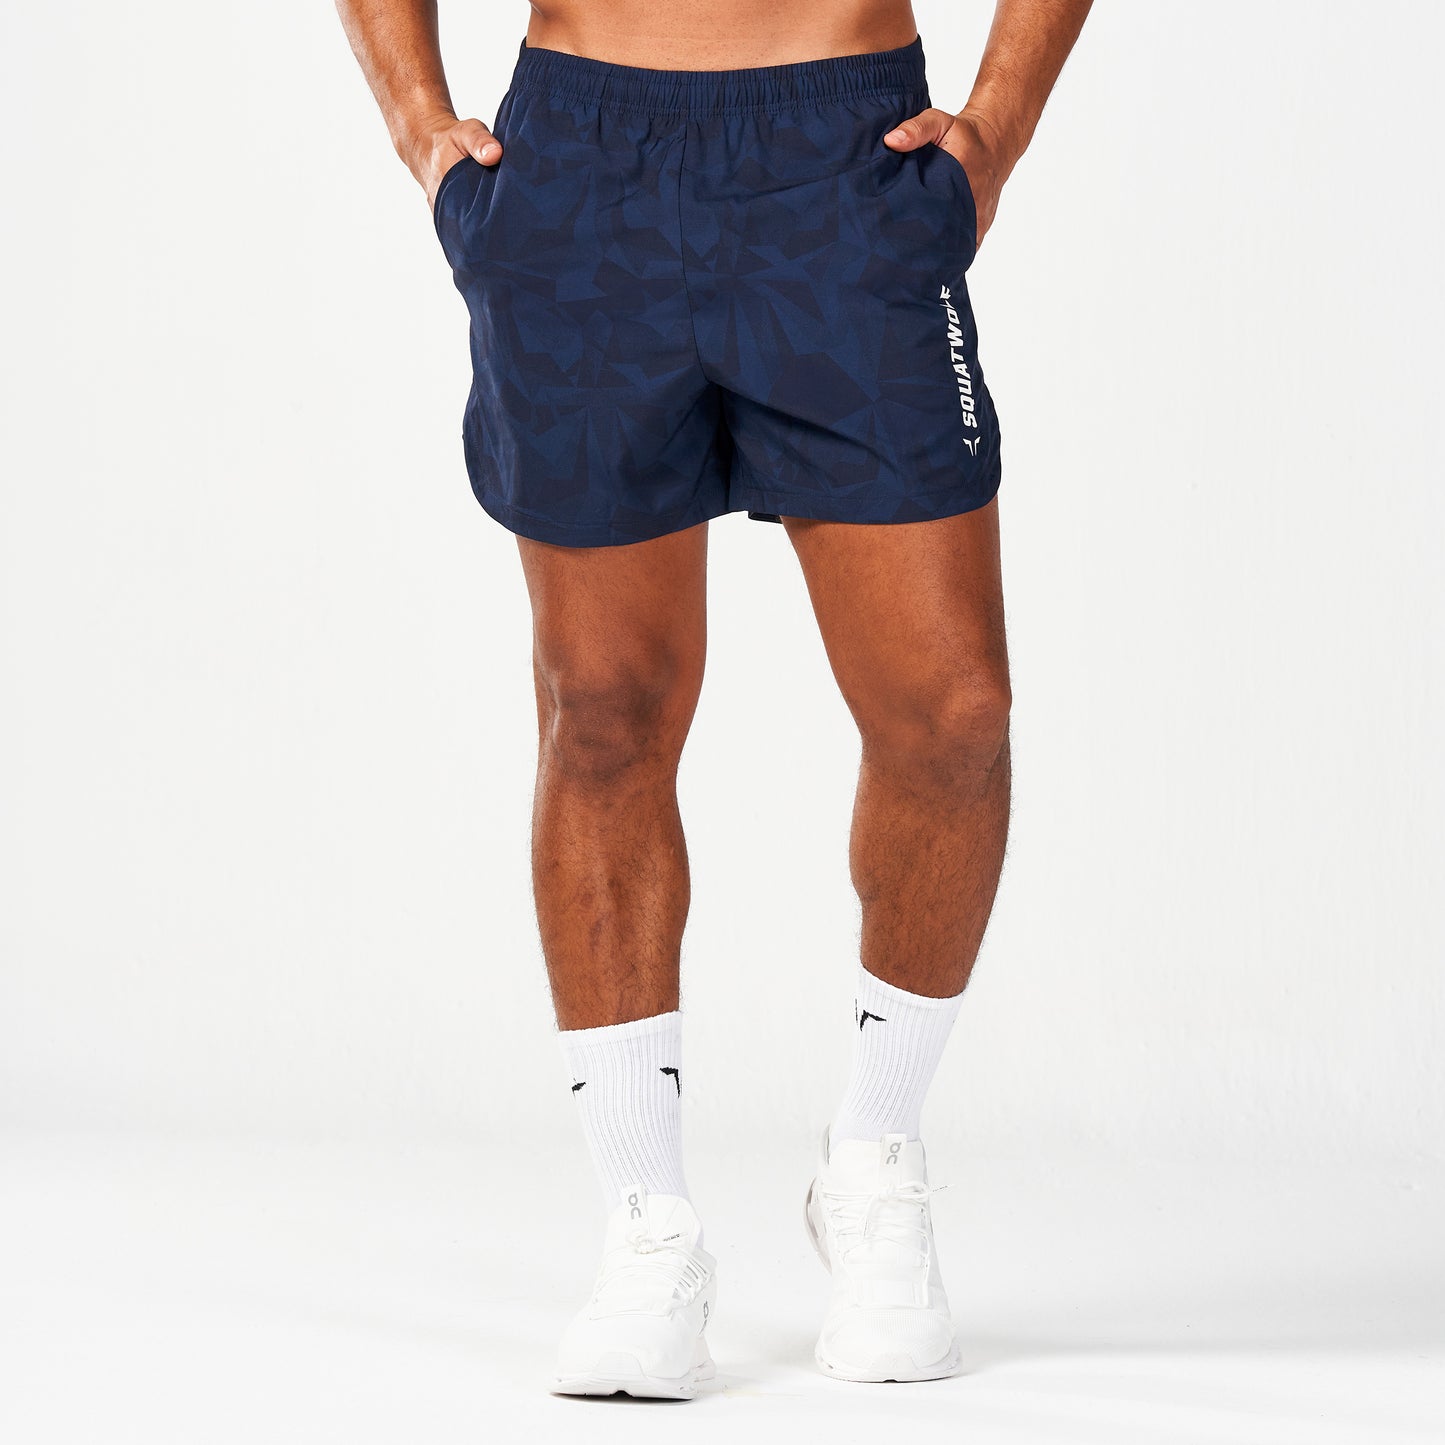 Warrior 5" Shorts 2.0 - Navy Dot Camo